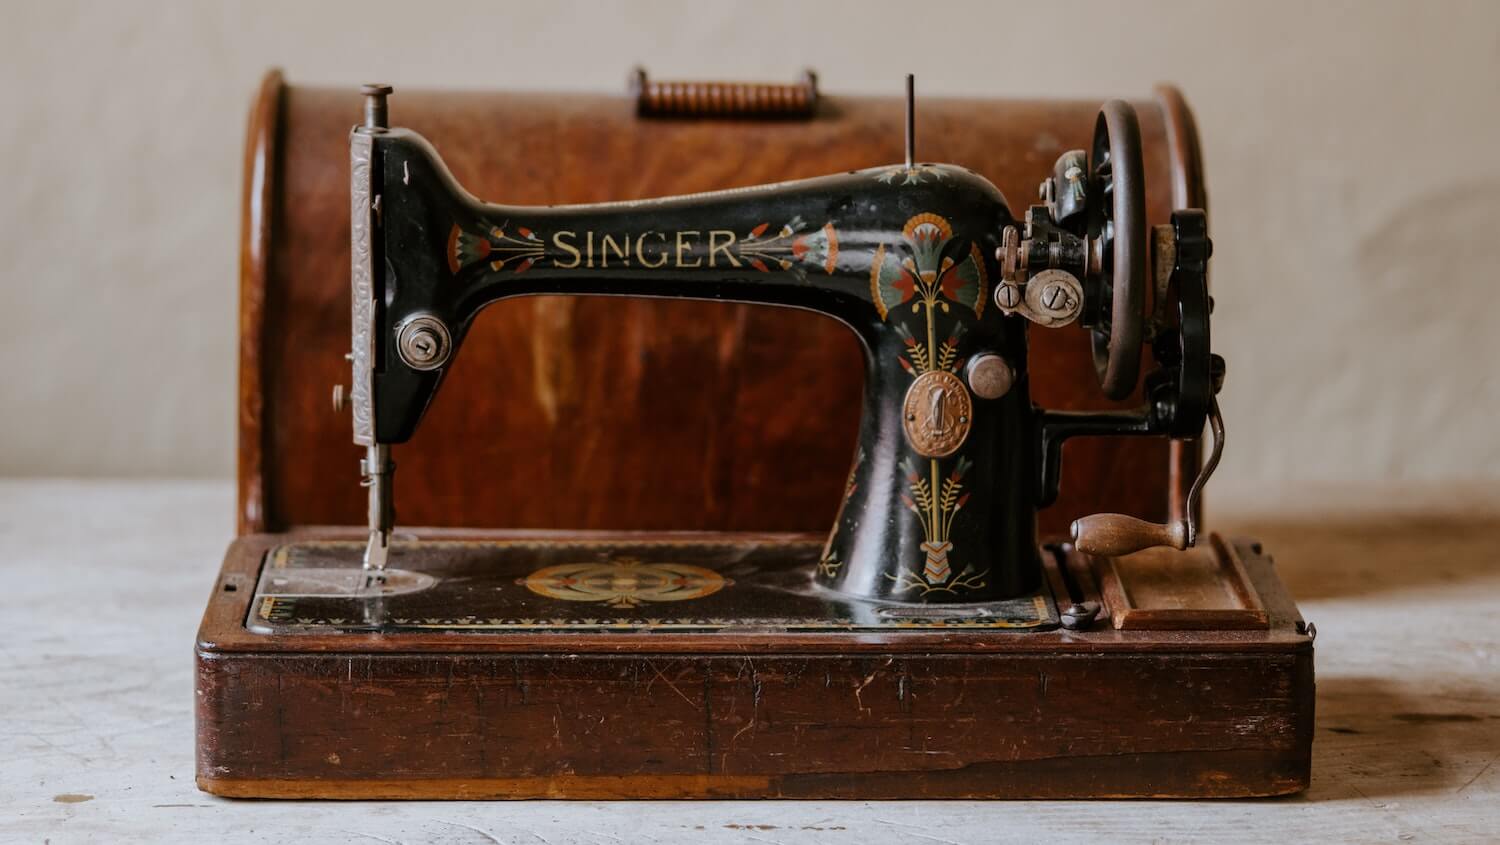 L'histoire d'une pionnière de la couture : la marque Singer